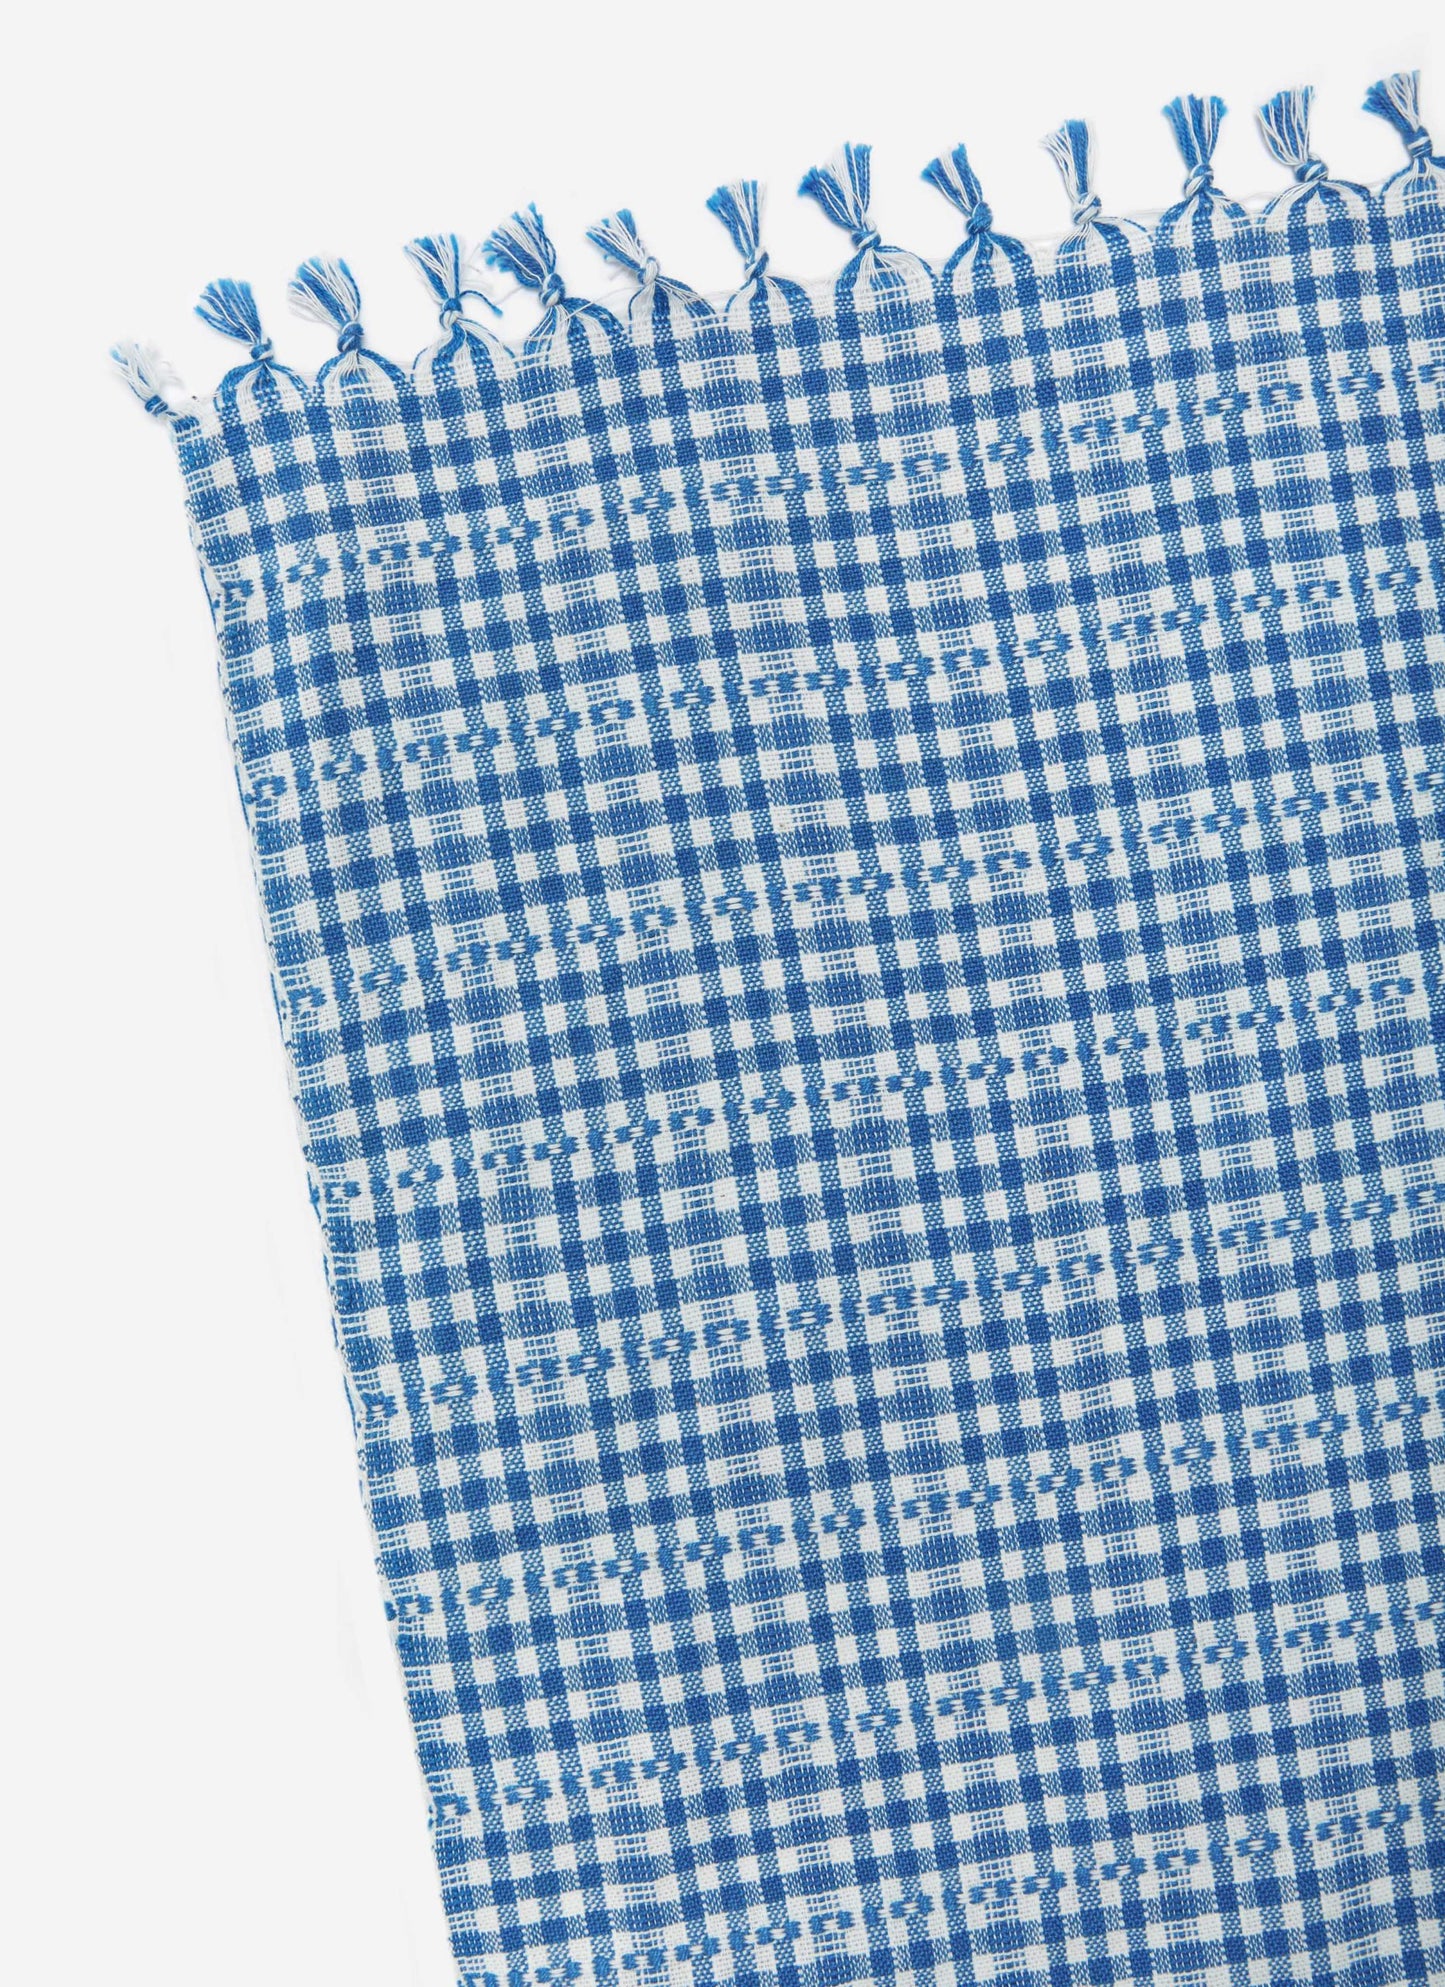 Woven Tablecloth: Soho - Cobalt